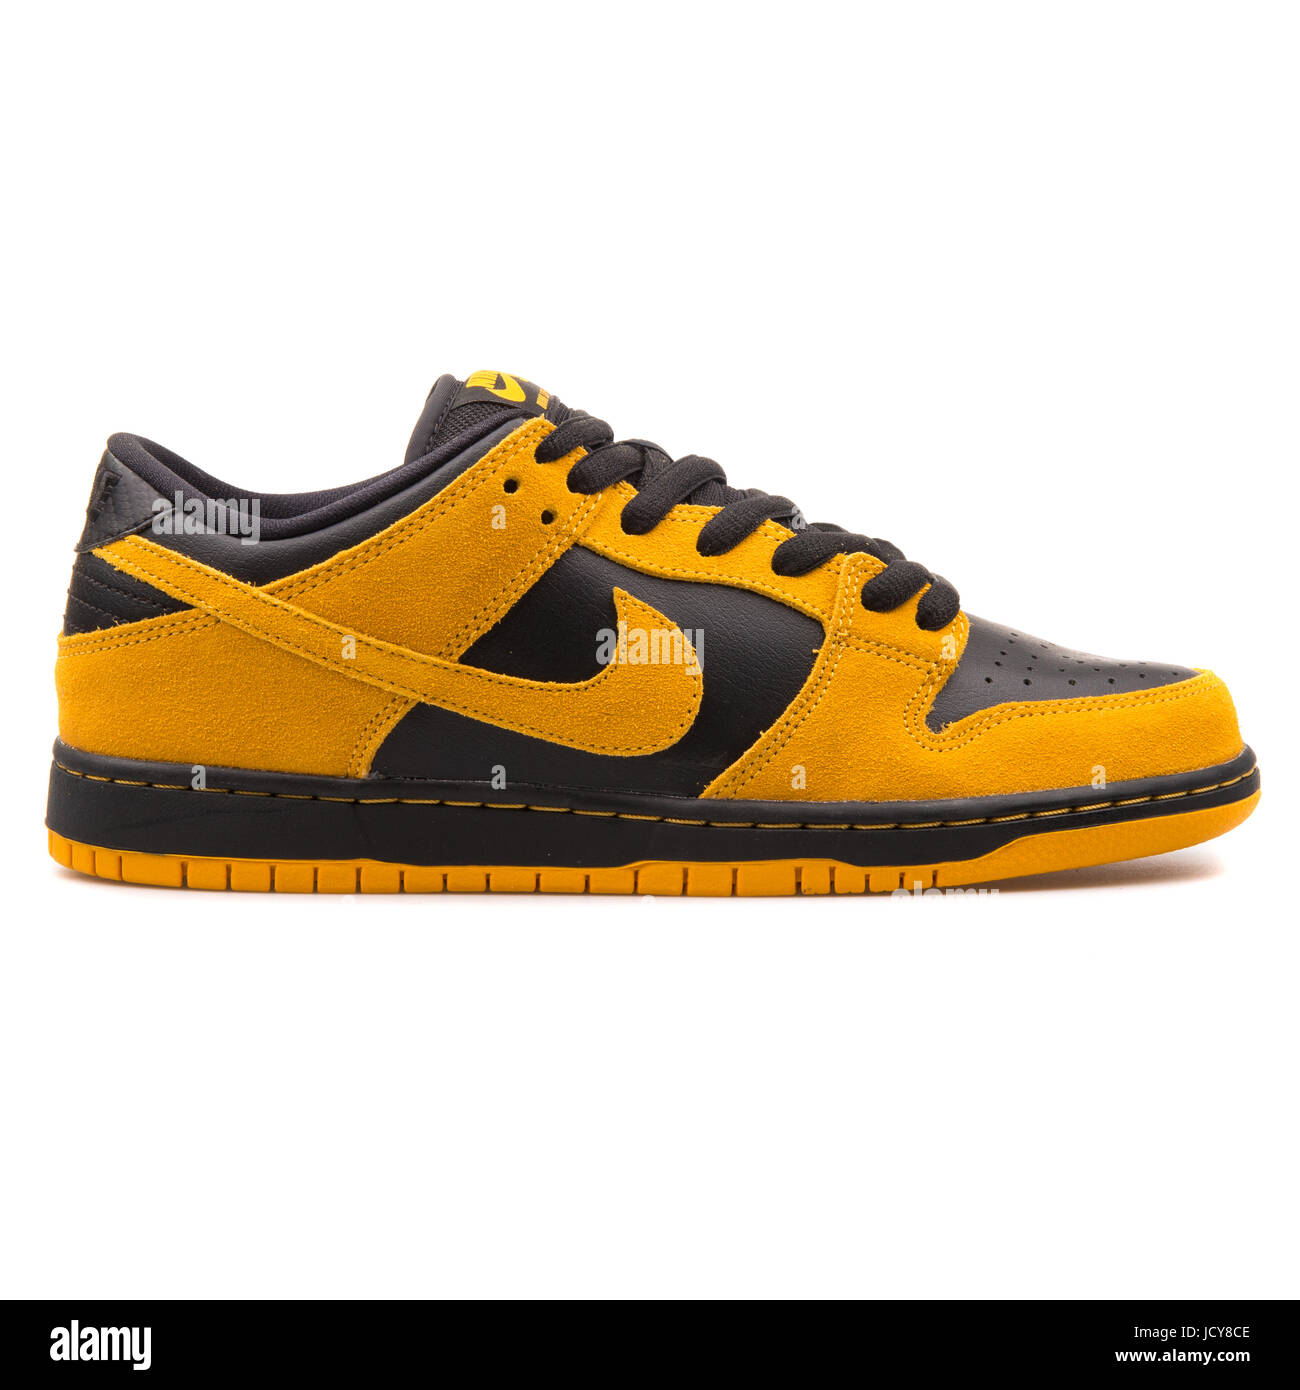 Nike Dunk Low Pro oro amarillo y negro hombres Skateboarding Shoes - 304292-706 Fotografía de stock - Alamy